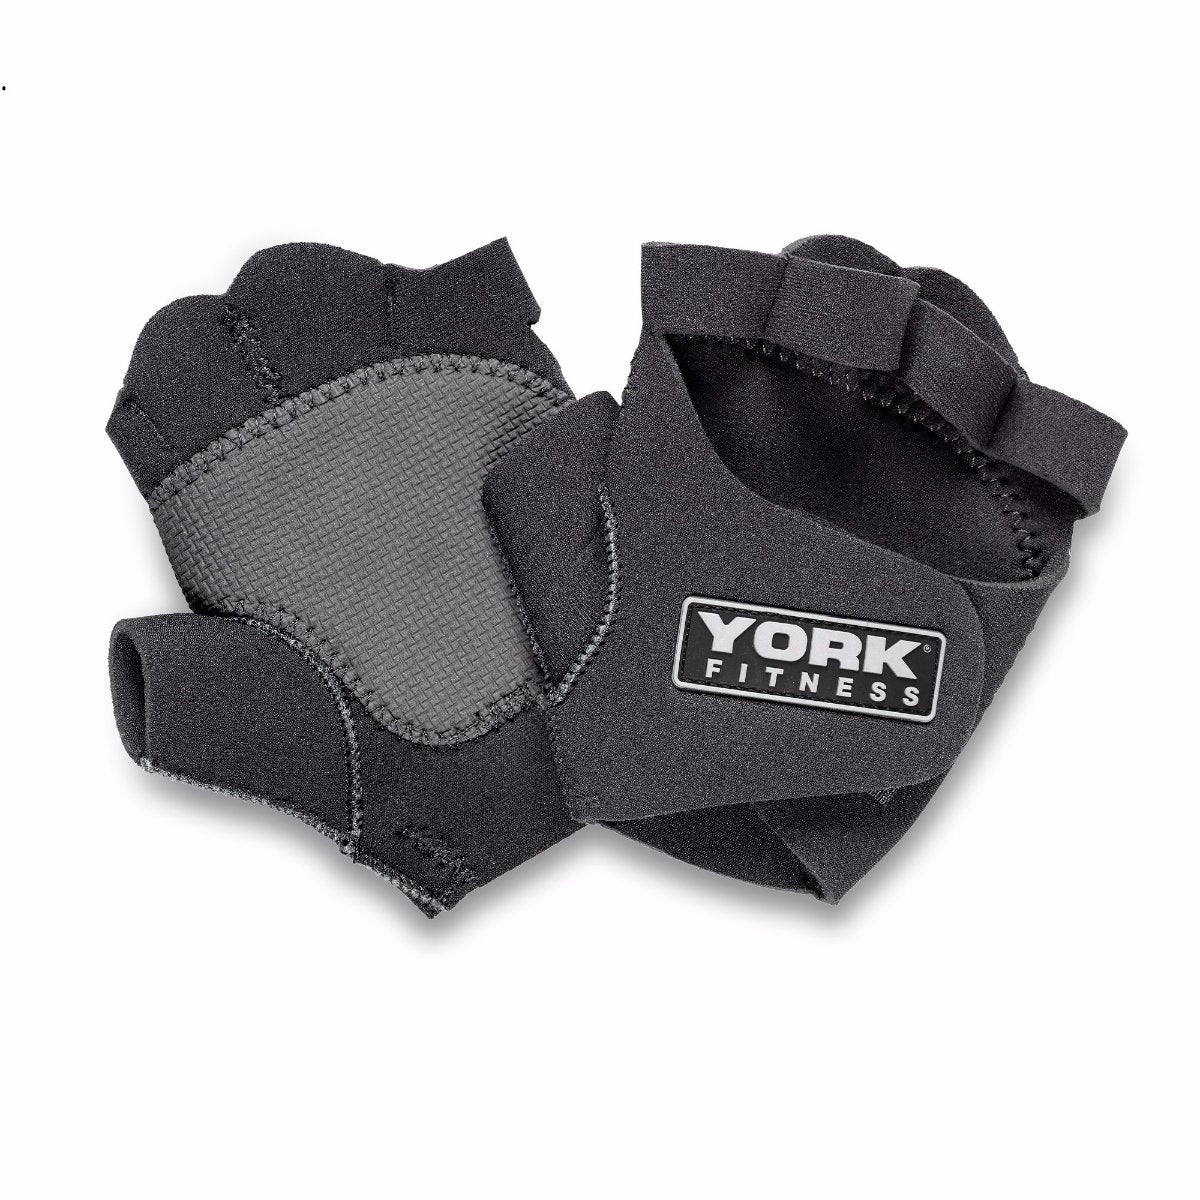 York Fitness Neoprene Training Gloves, York Fitness